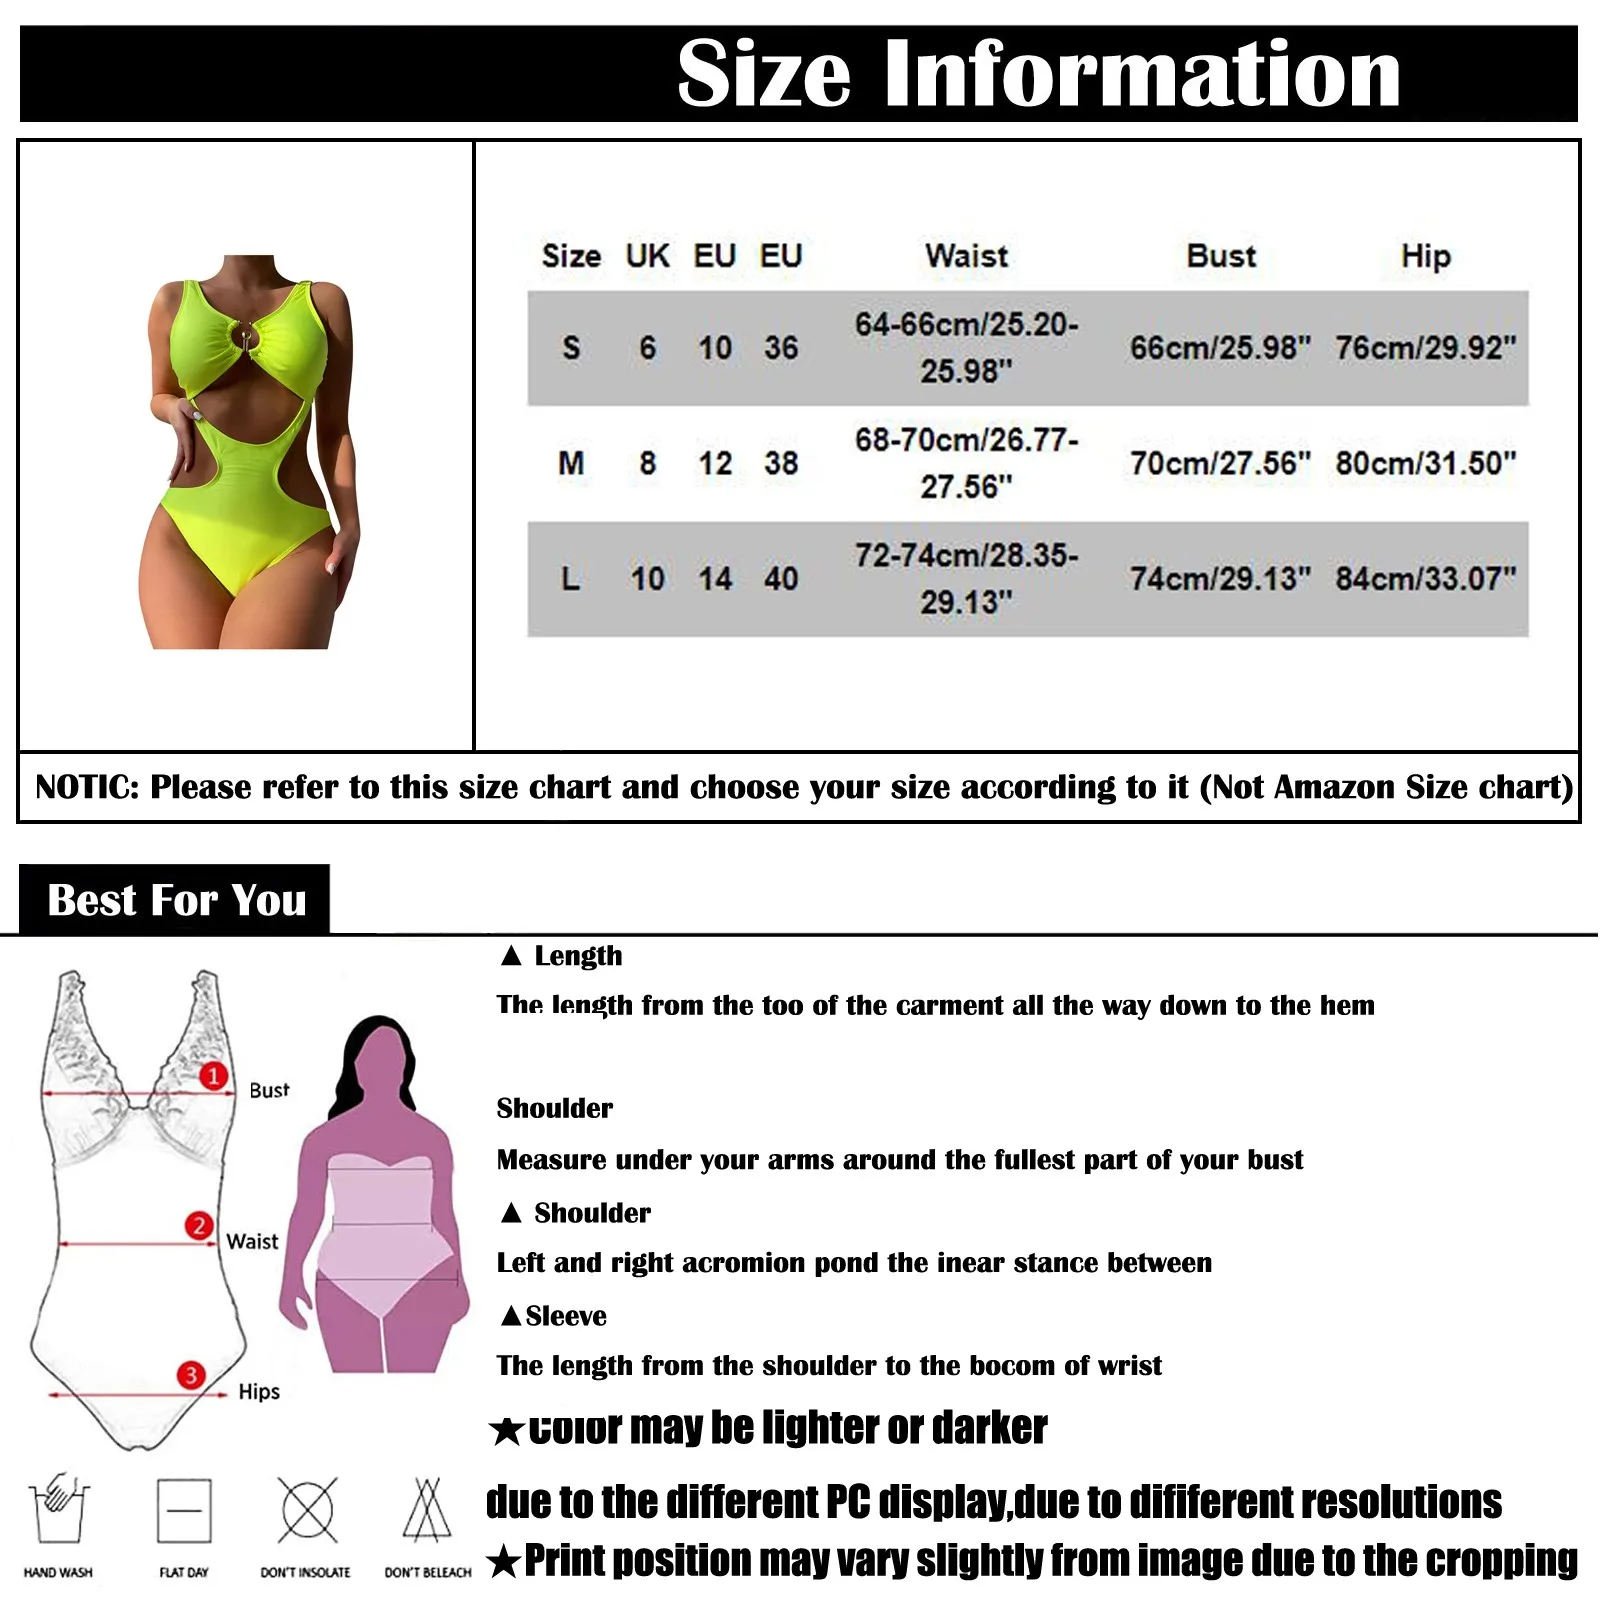 объемы груди у женщин в размерах фото 109